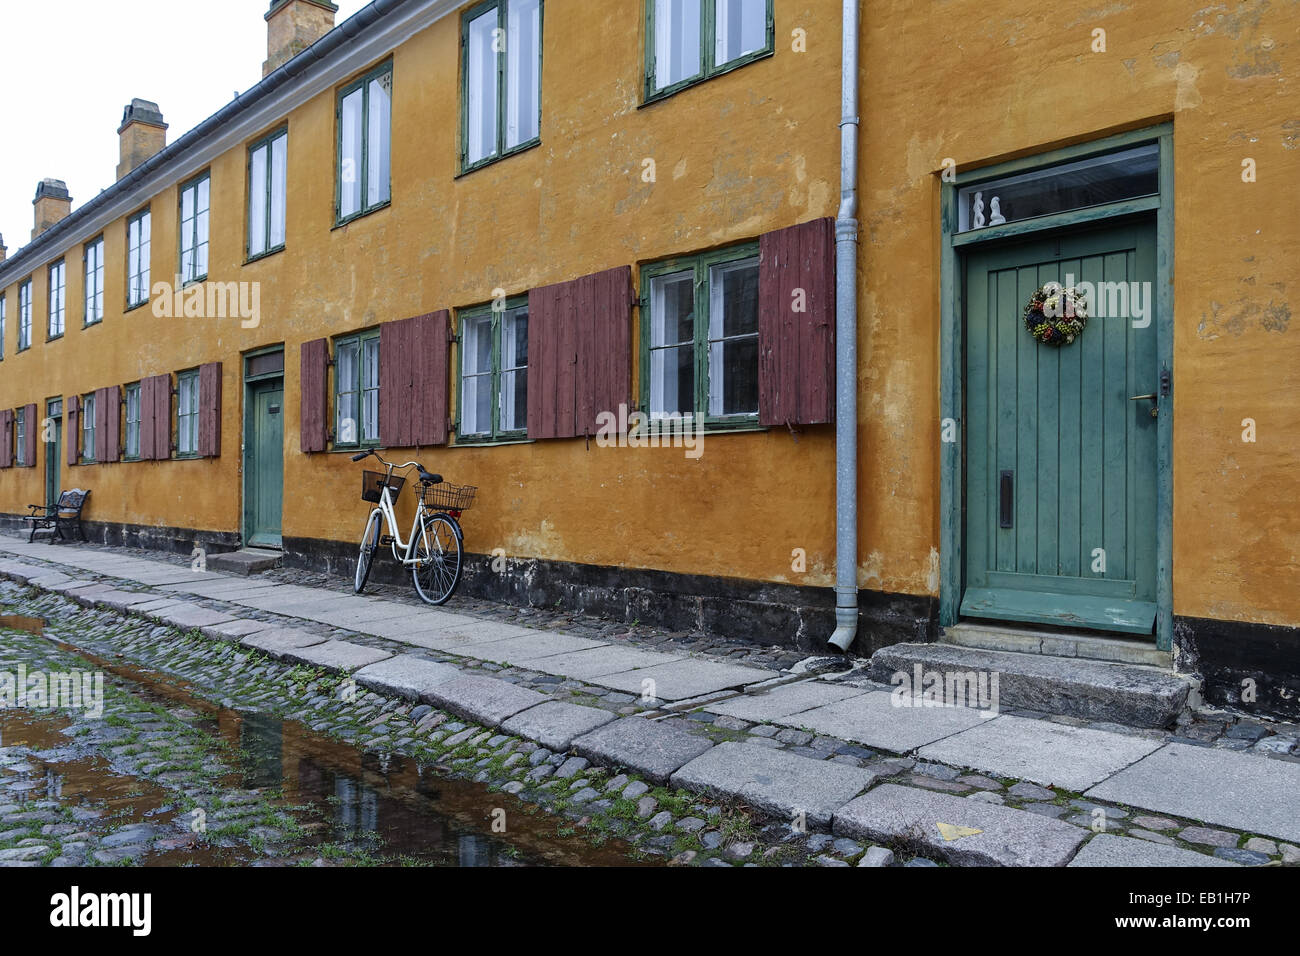 Stadtteil Nyborder in Kopenhagen, Wohnanlage für Seeleute der dänisches Flotte, gebaut 1631-41..Dänemark, Skandinavien, Europa Stock Photo